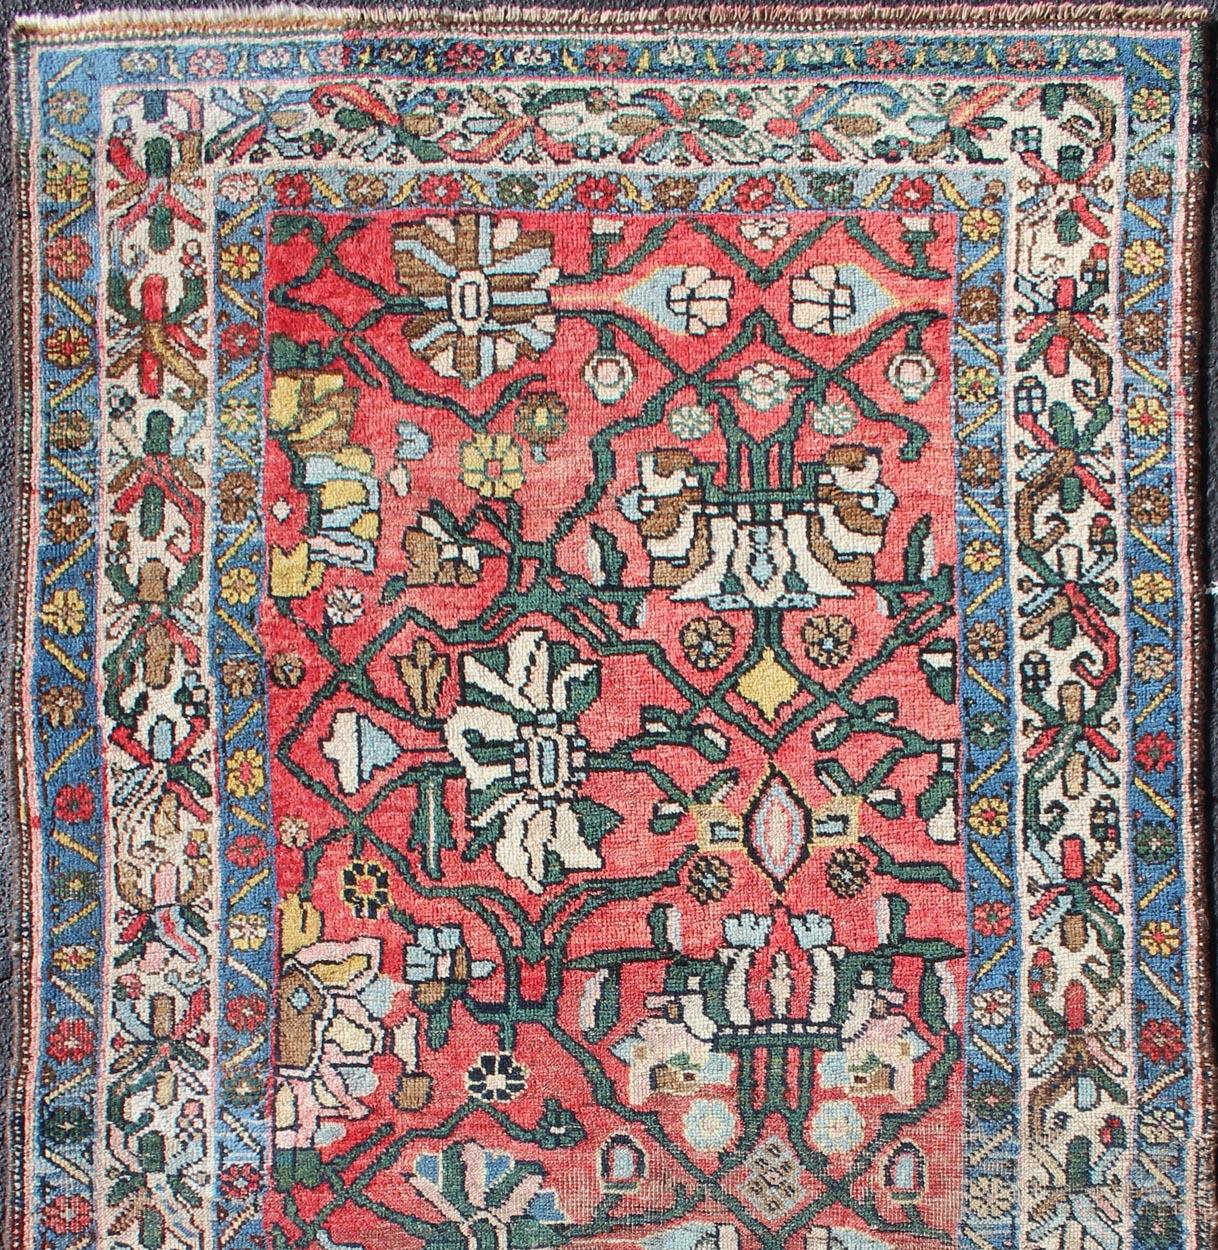 Weicher roter Hintergrund antiker persischer Bidjar Teppich mit floralen Motiven, Teppich H-411-12, Herkunftsland / Typ: Iran / Täbris, um 1900

Dieser antike persische Bidjar-Teppich ist mehrfarbig und hat eine große Blumenpracht, die durch